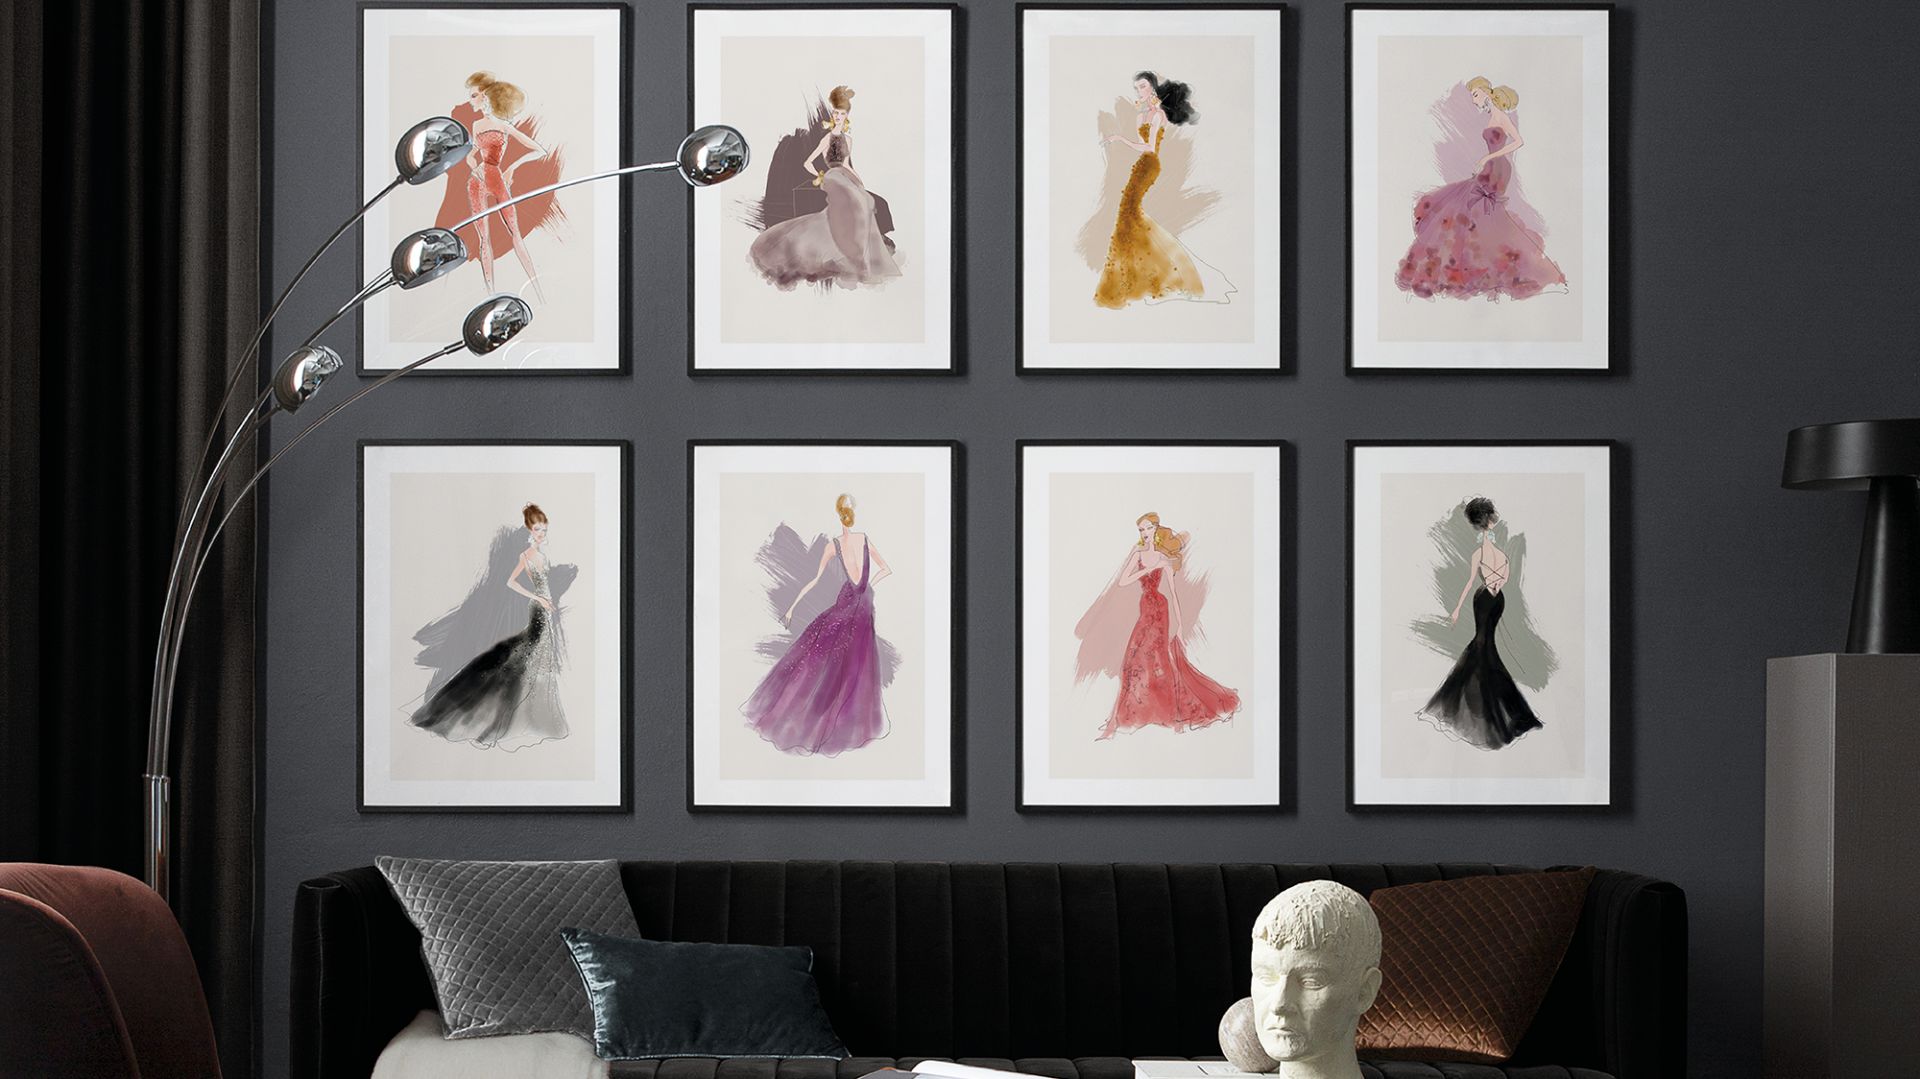 Ściana w salonie: co powiecie na grafiki kultowego projektanta mody?